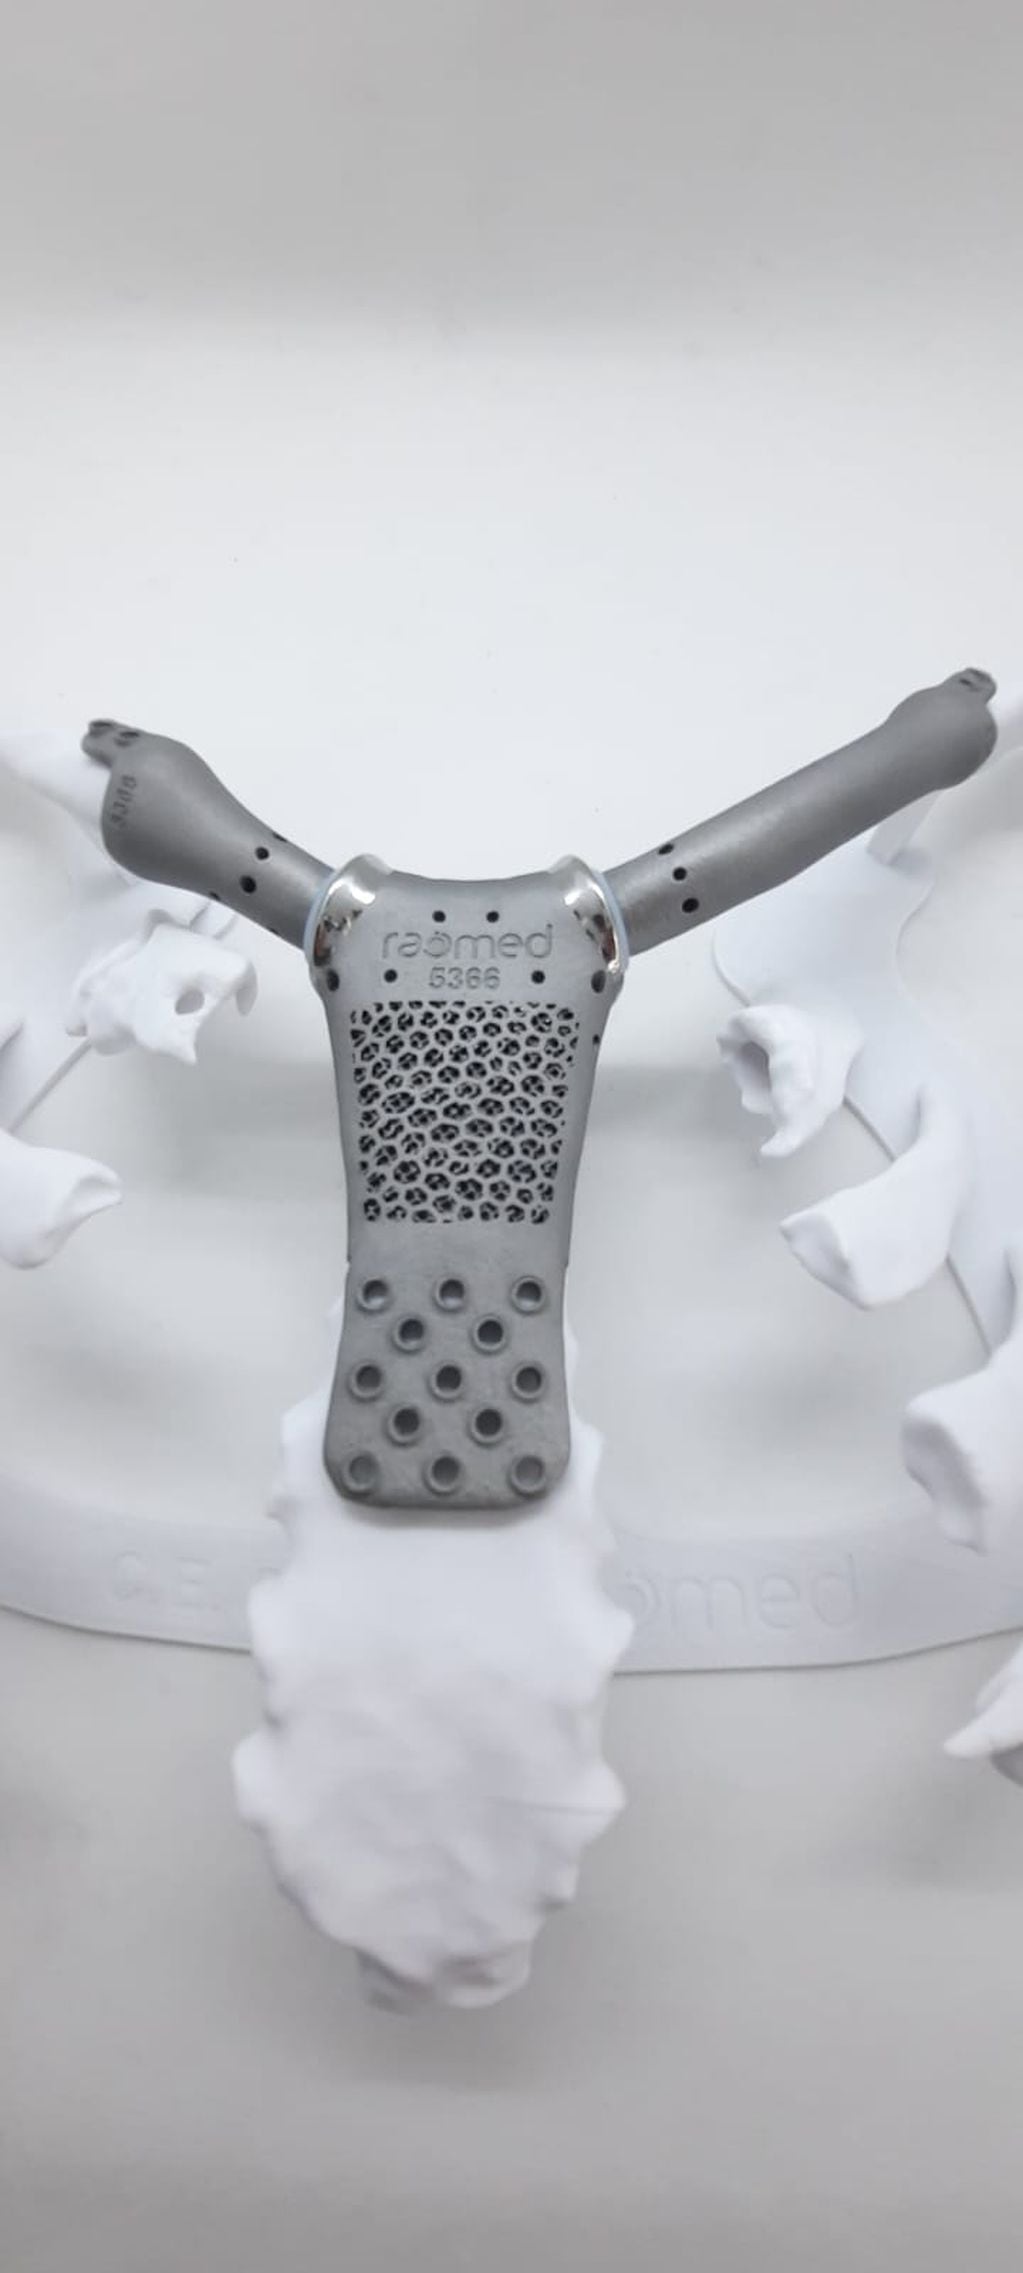 Así es la prótesis que le colocaron a una paciente de 61 años en Córdoba.